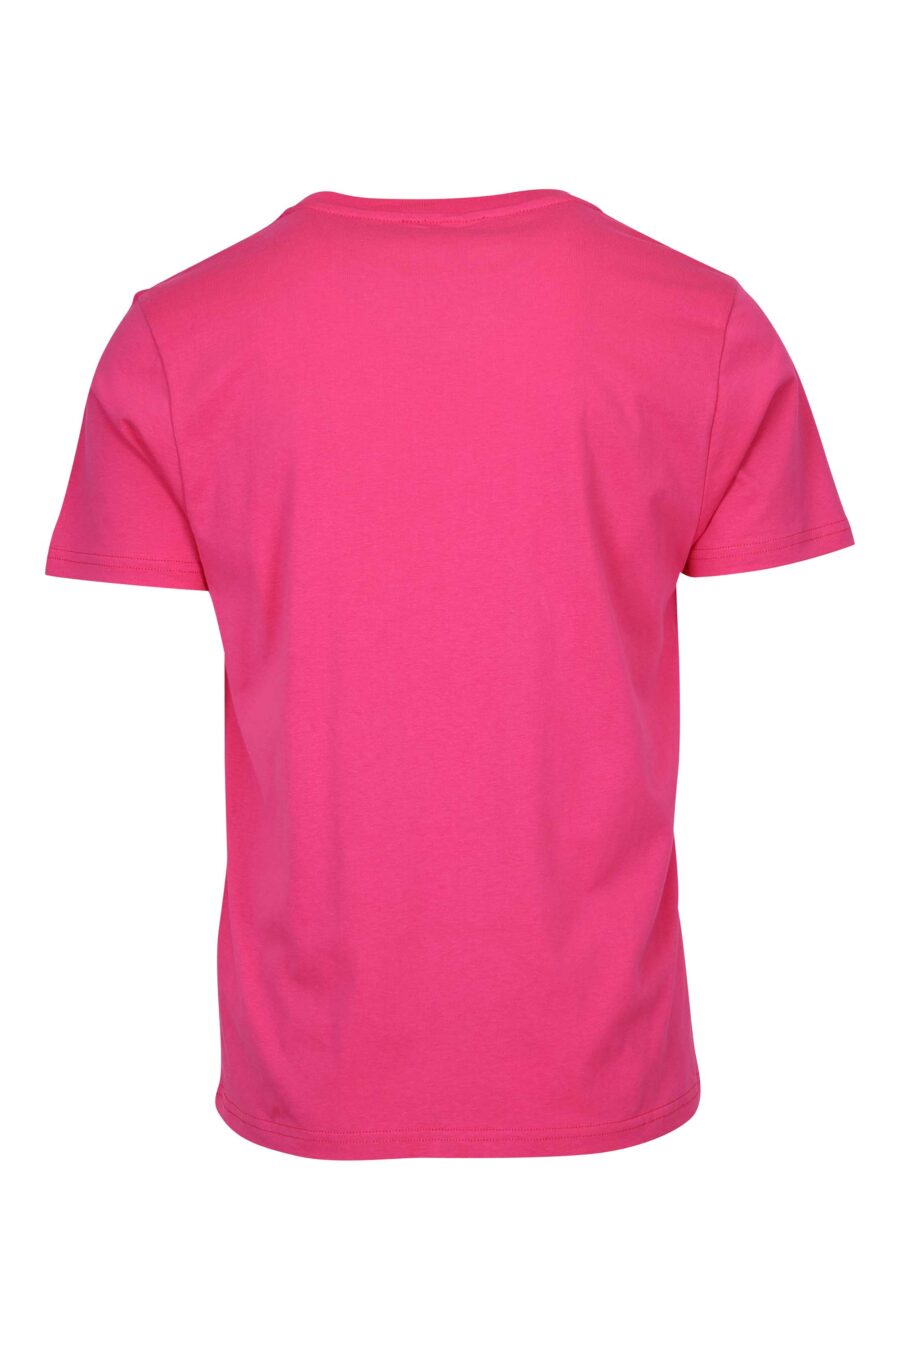 T-shirt fúcsia com logótipo de borracha monocromático nos ombros - 667113671888 1